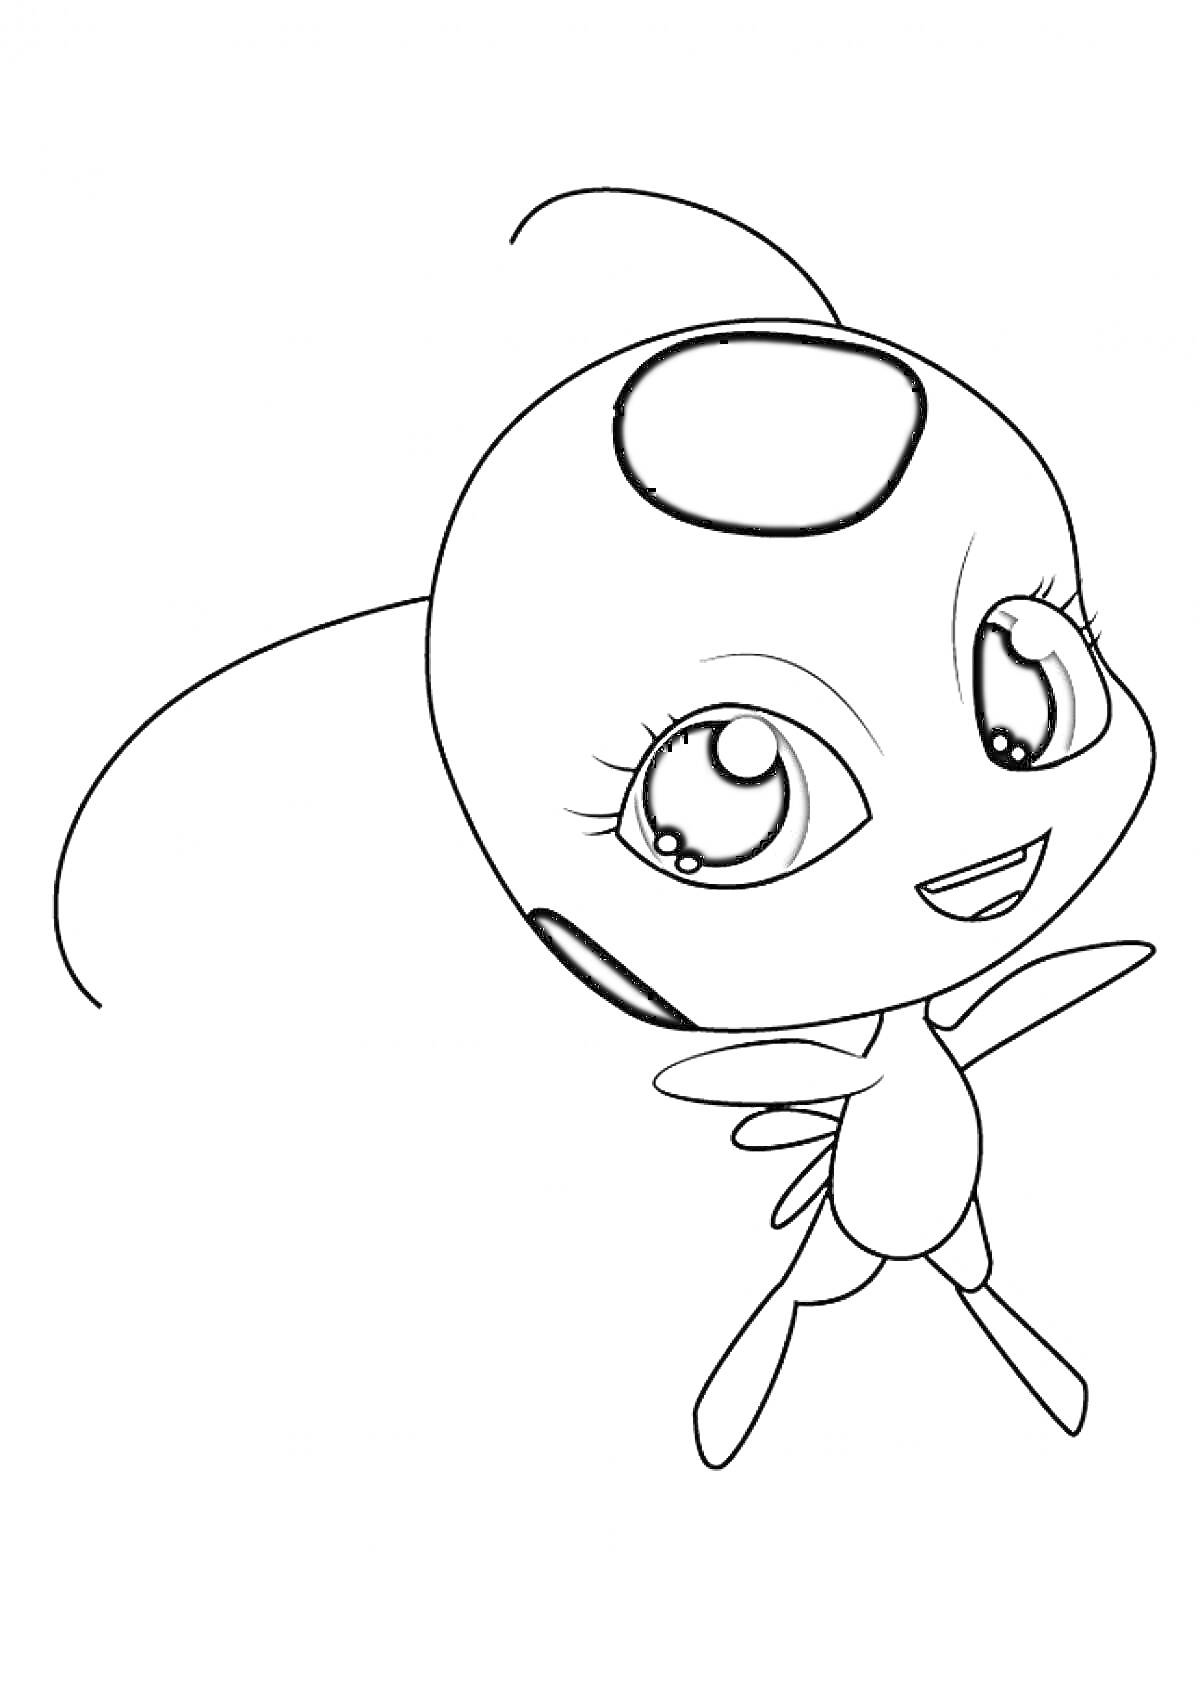 Раскраска Маленький персонаж Леди Баг с большими глазами и пятнами на голове и теле